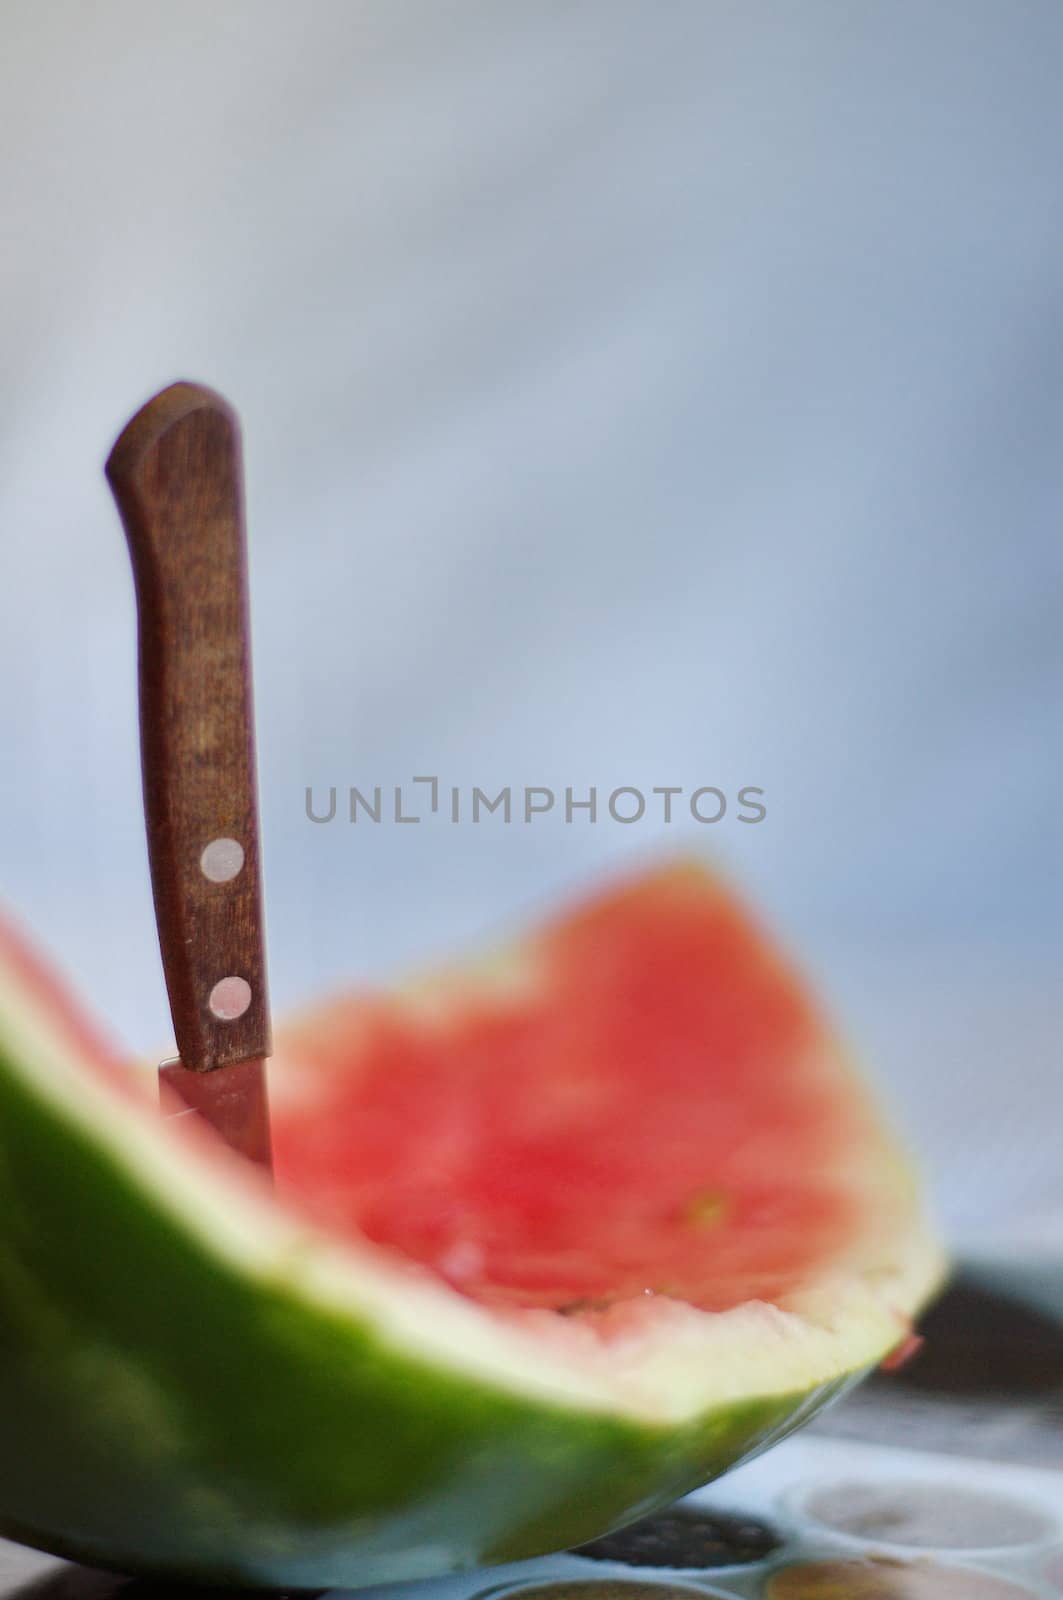 A slice of watermelon eaten